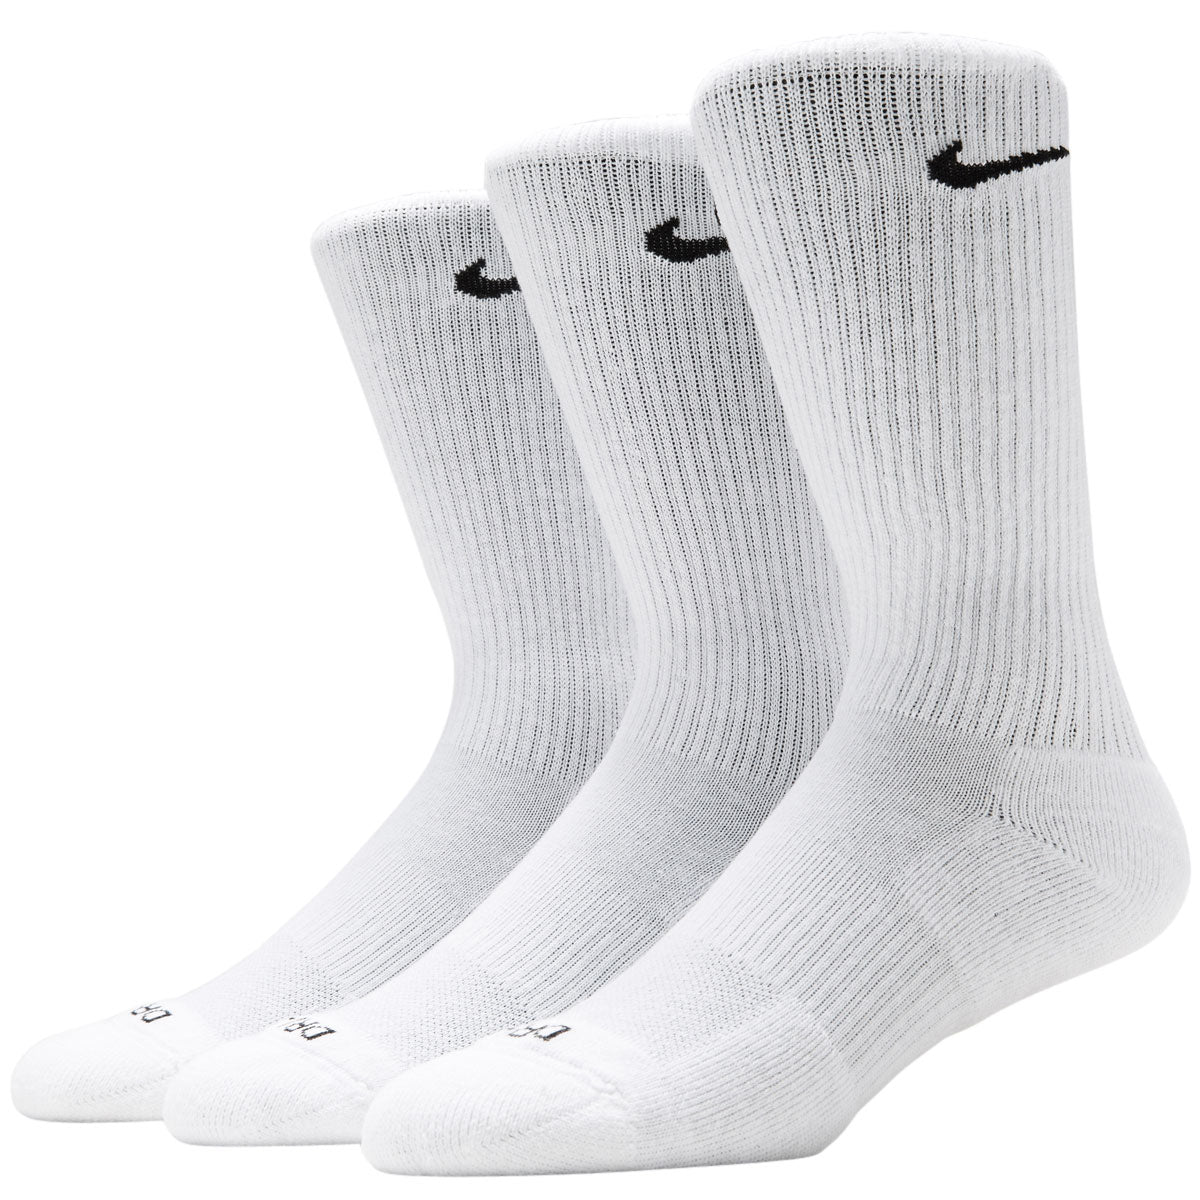 Nike SB Everyday Plus Cushioned 3 Pack of Socks - White/Black image 1